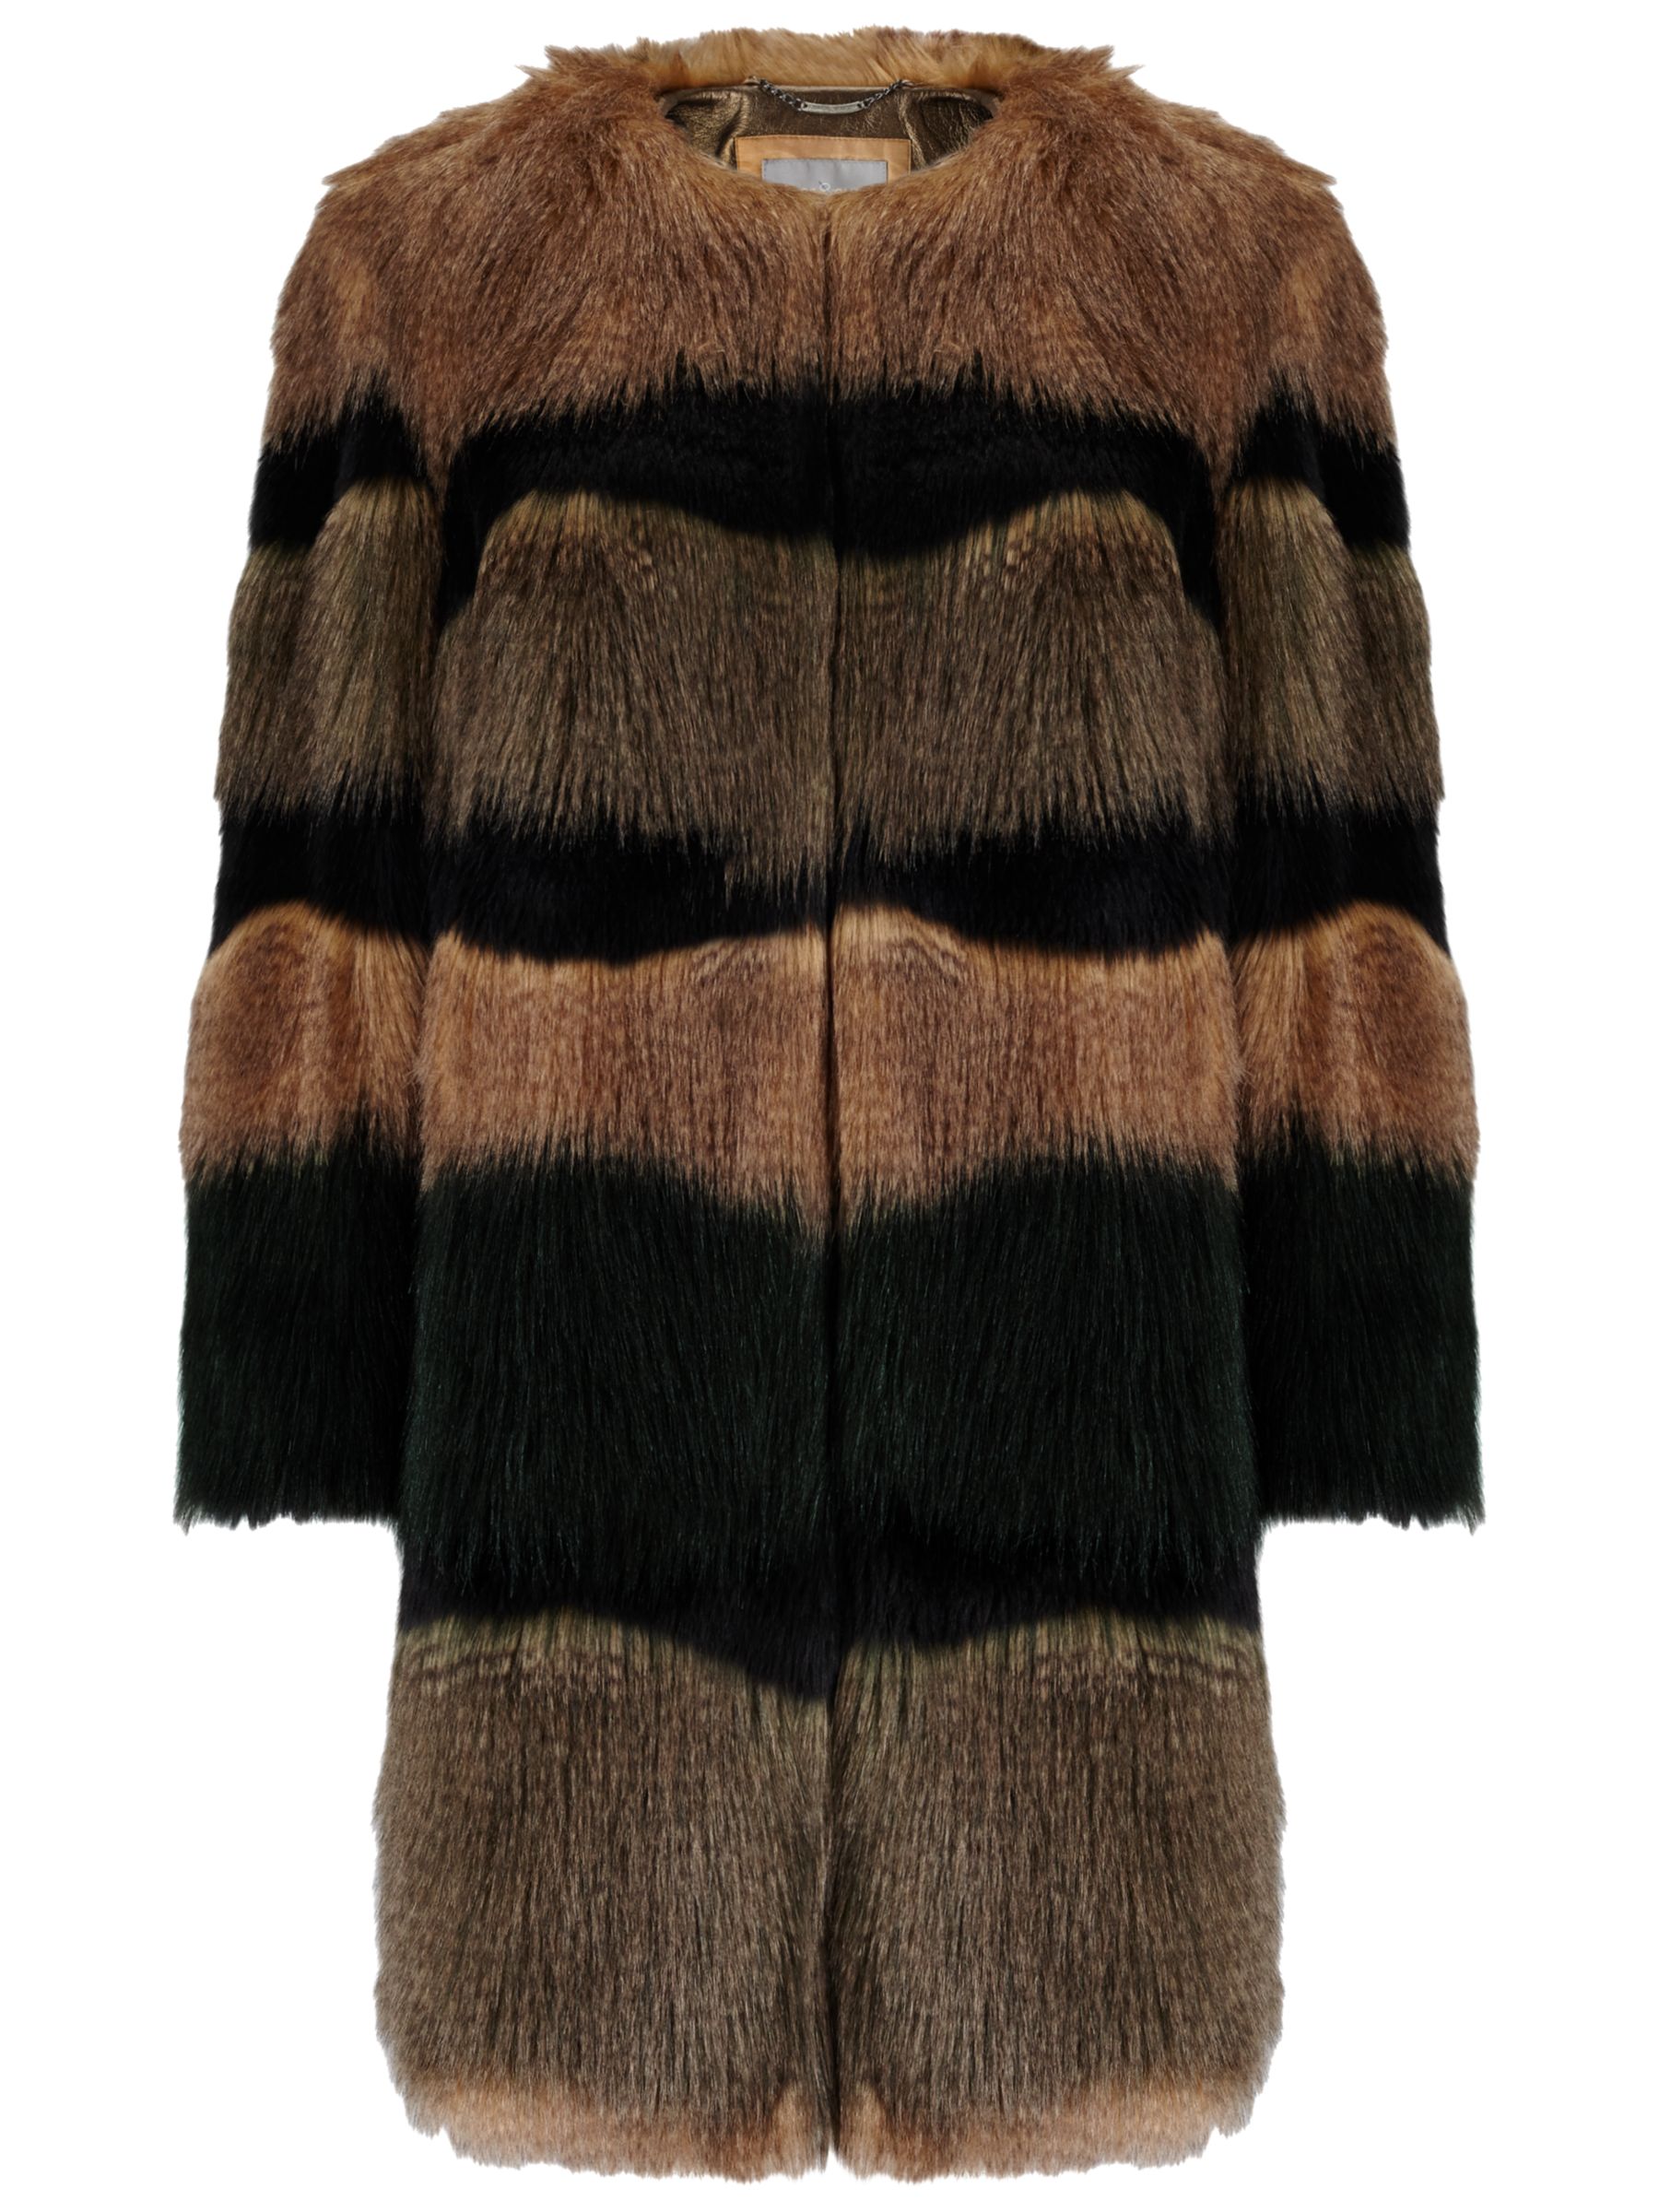 Grace & Oliver Abby Faux Fur Coat, Multi